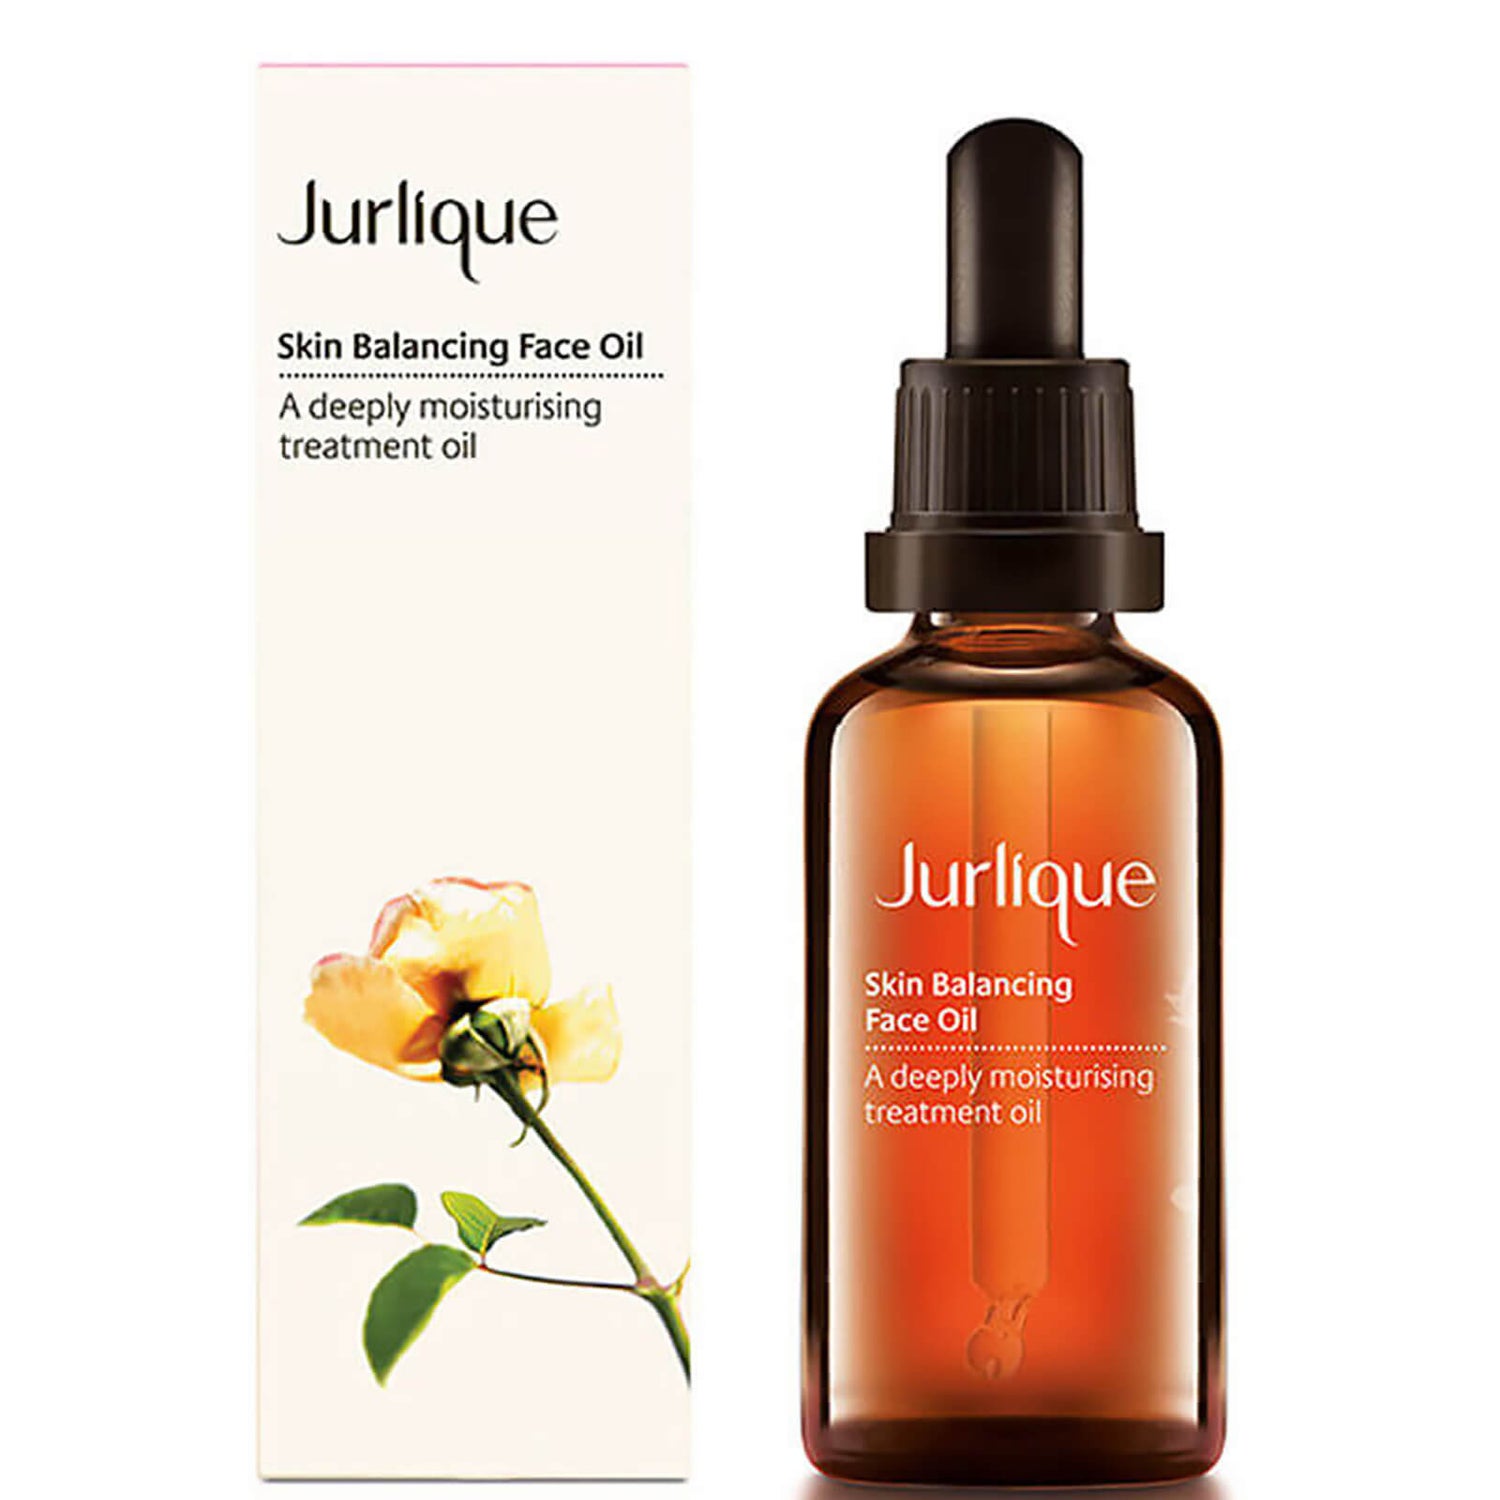 쥴리크 스킨 밸런싱 페이스 오일 (Jurlique Skin Balancing Face Oil) (50ml)